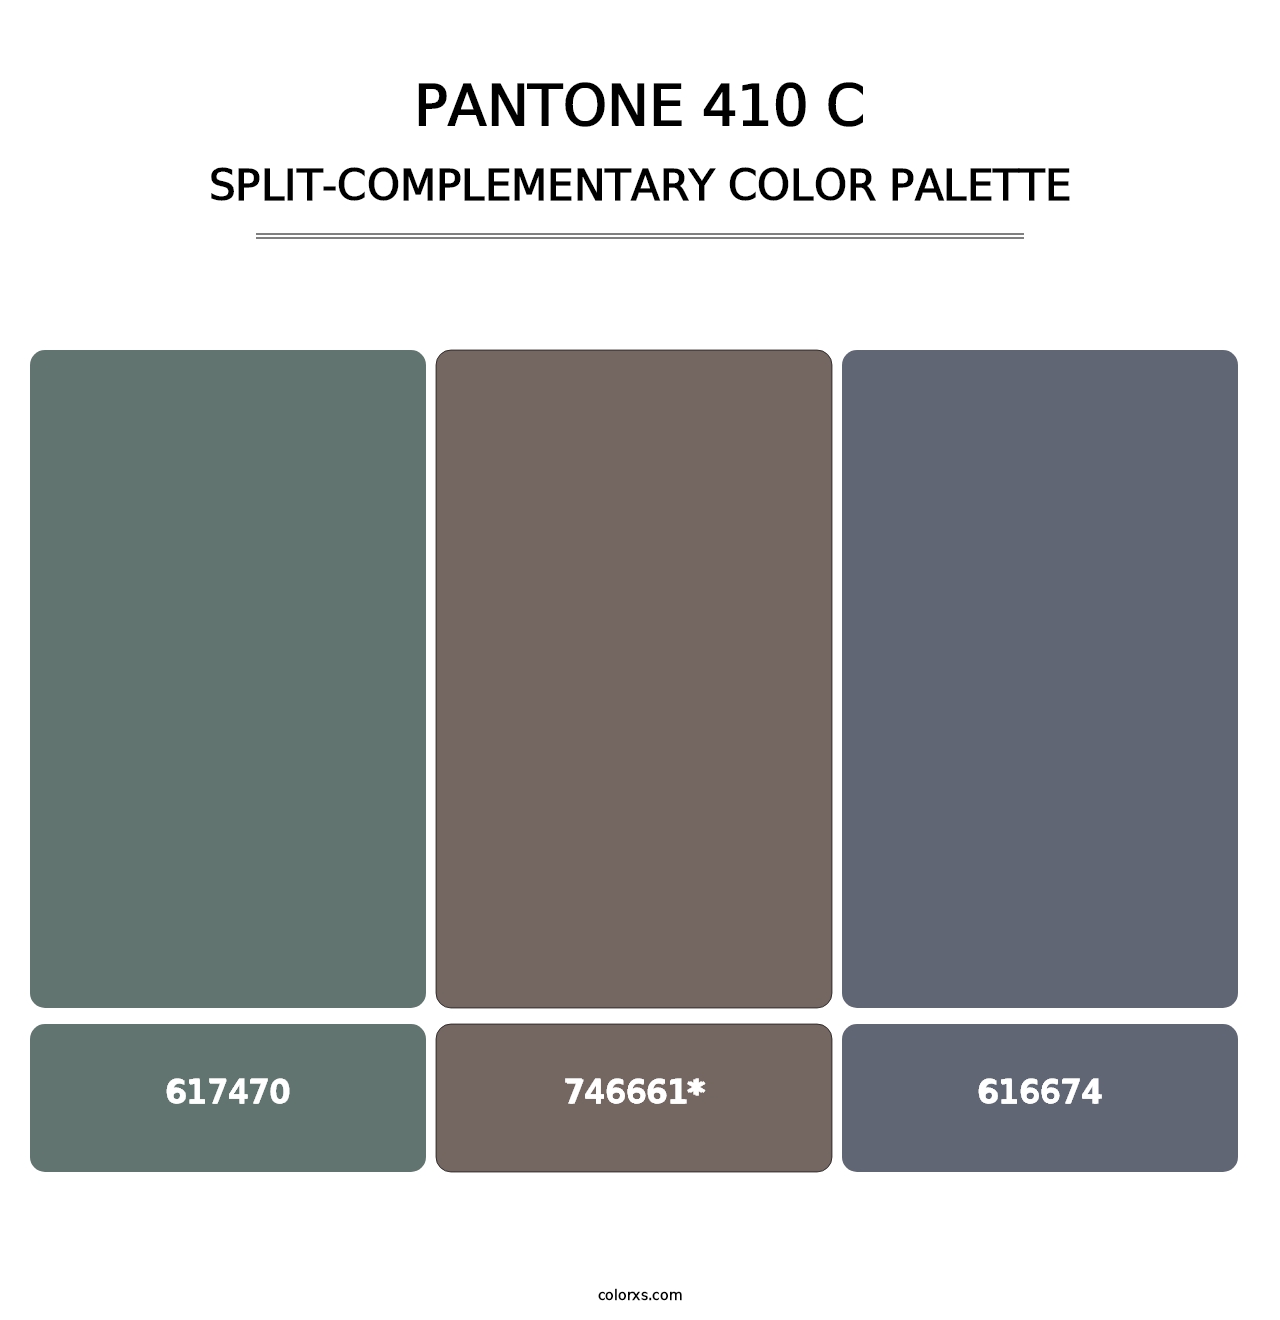 PANTONE 410 C - Split-Complementary Color Palette